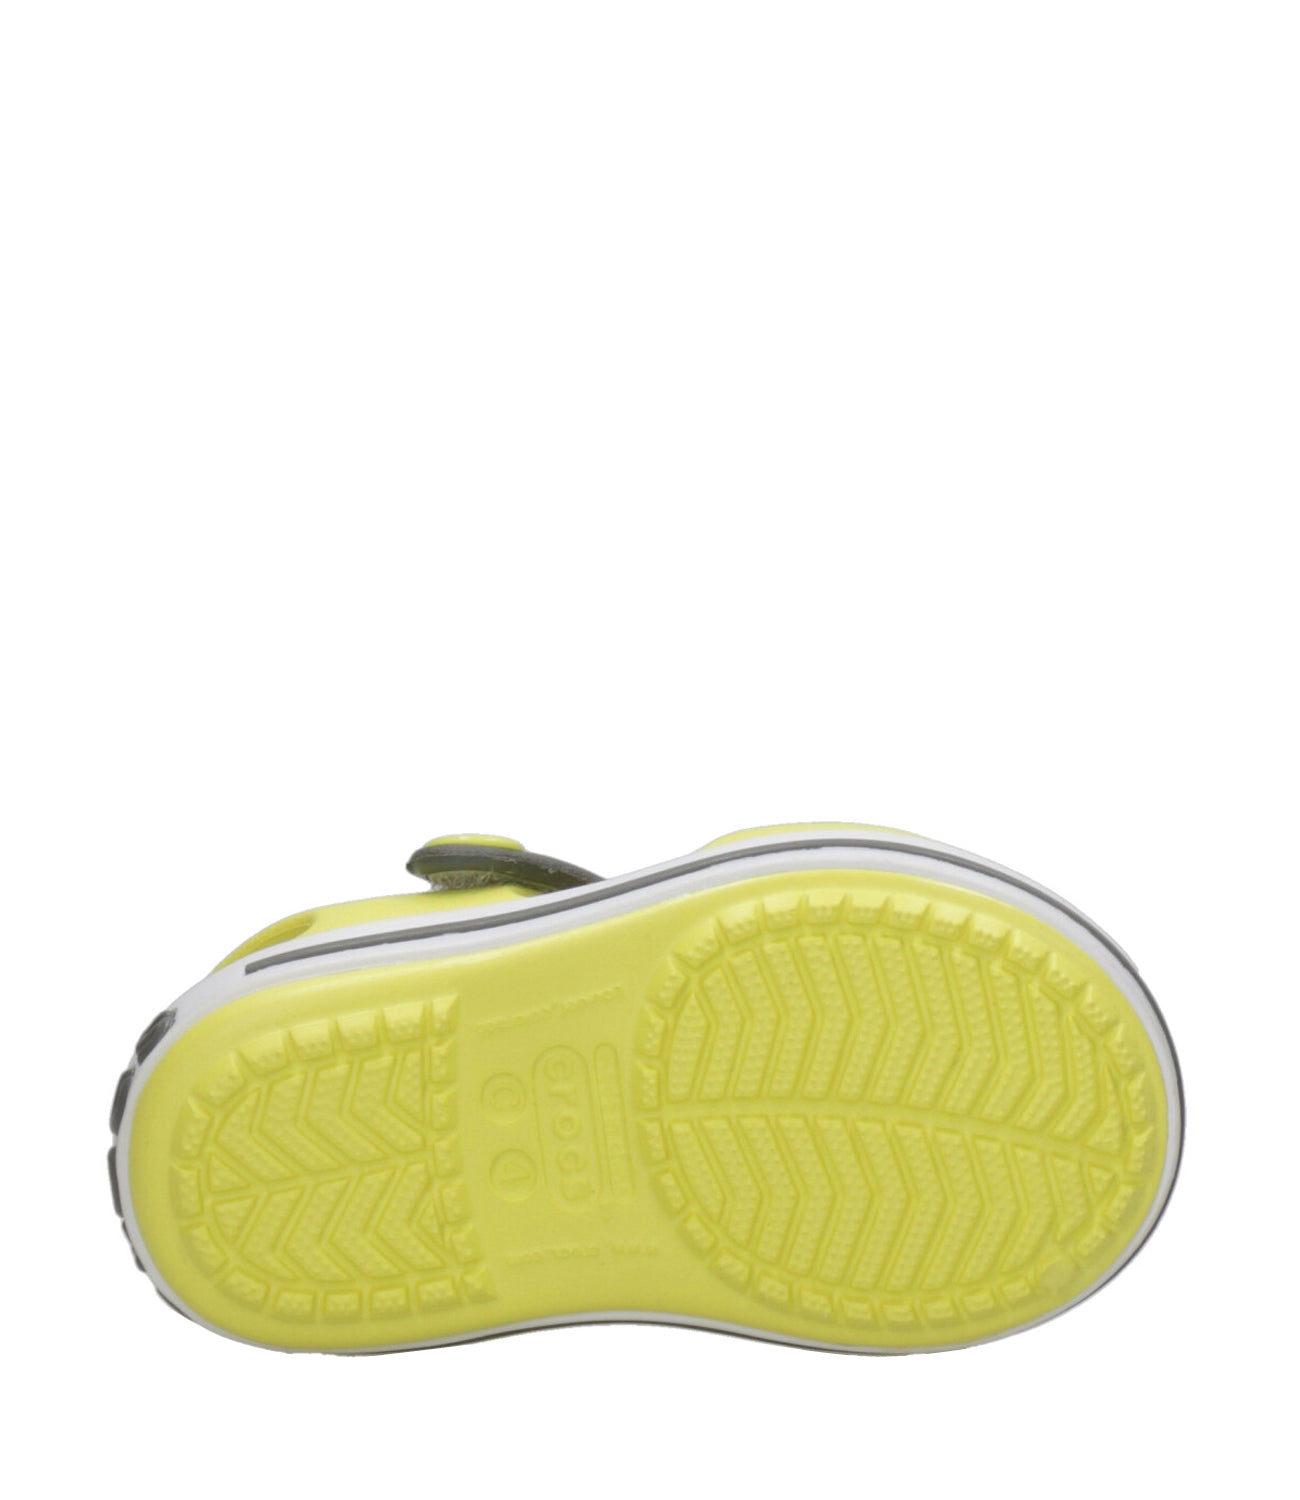 Crocs Kids | Crocband Sandal Sabot Yellow and Gray